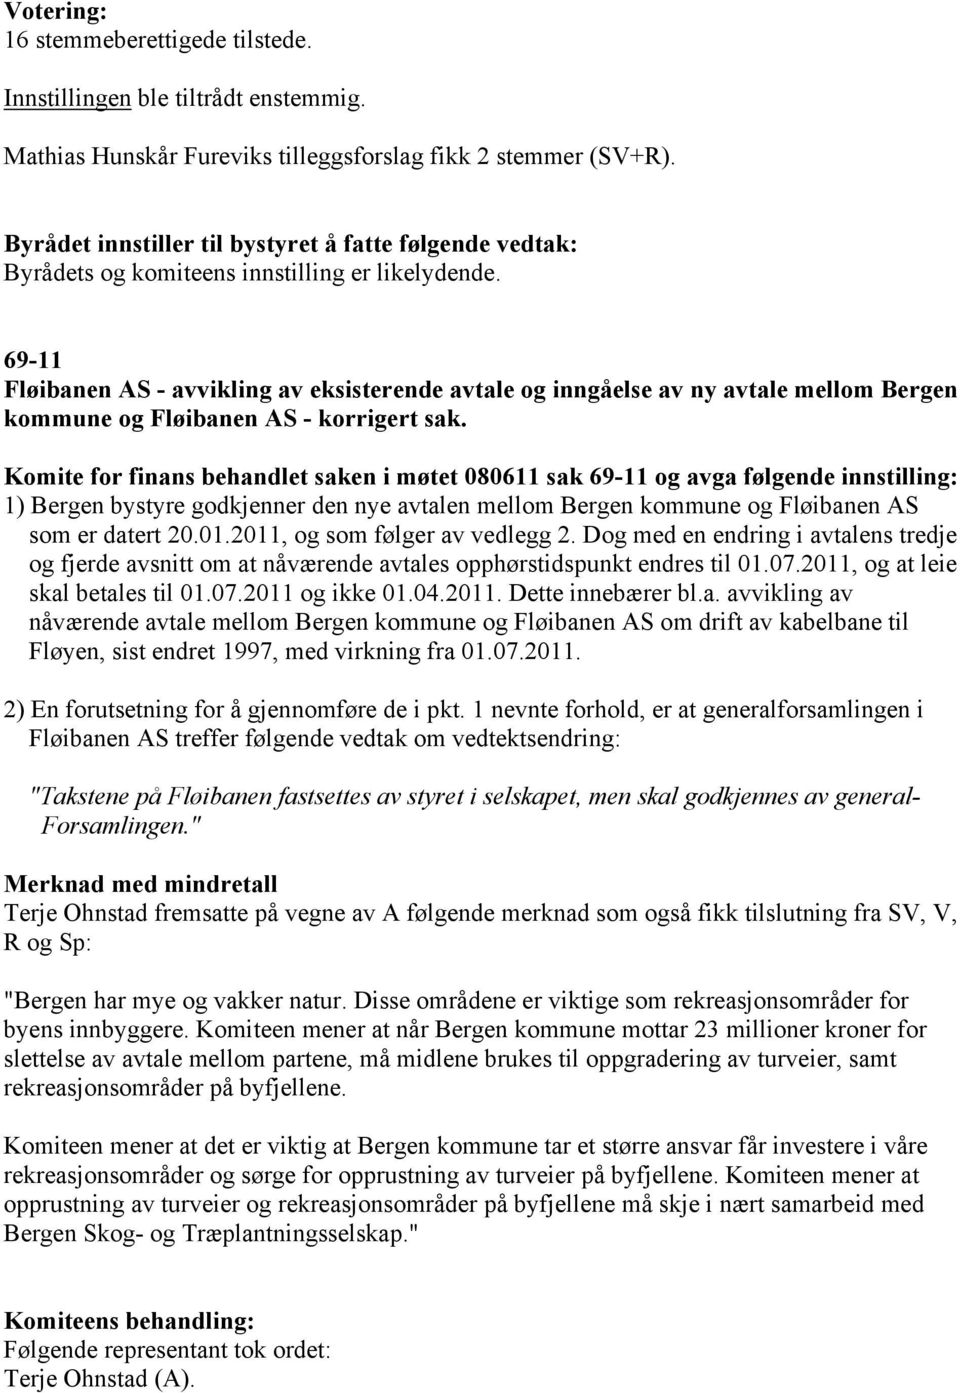 Komite for finans behandlet saken i møtet 080611 sak 69-11 og avga følgende innstilling: 1) Bergen bystyre godkjenner den nye avtalen mellom Bergen kommune og Fløibanen AS som er datert 20.01.